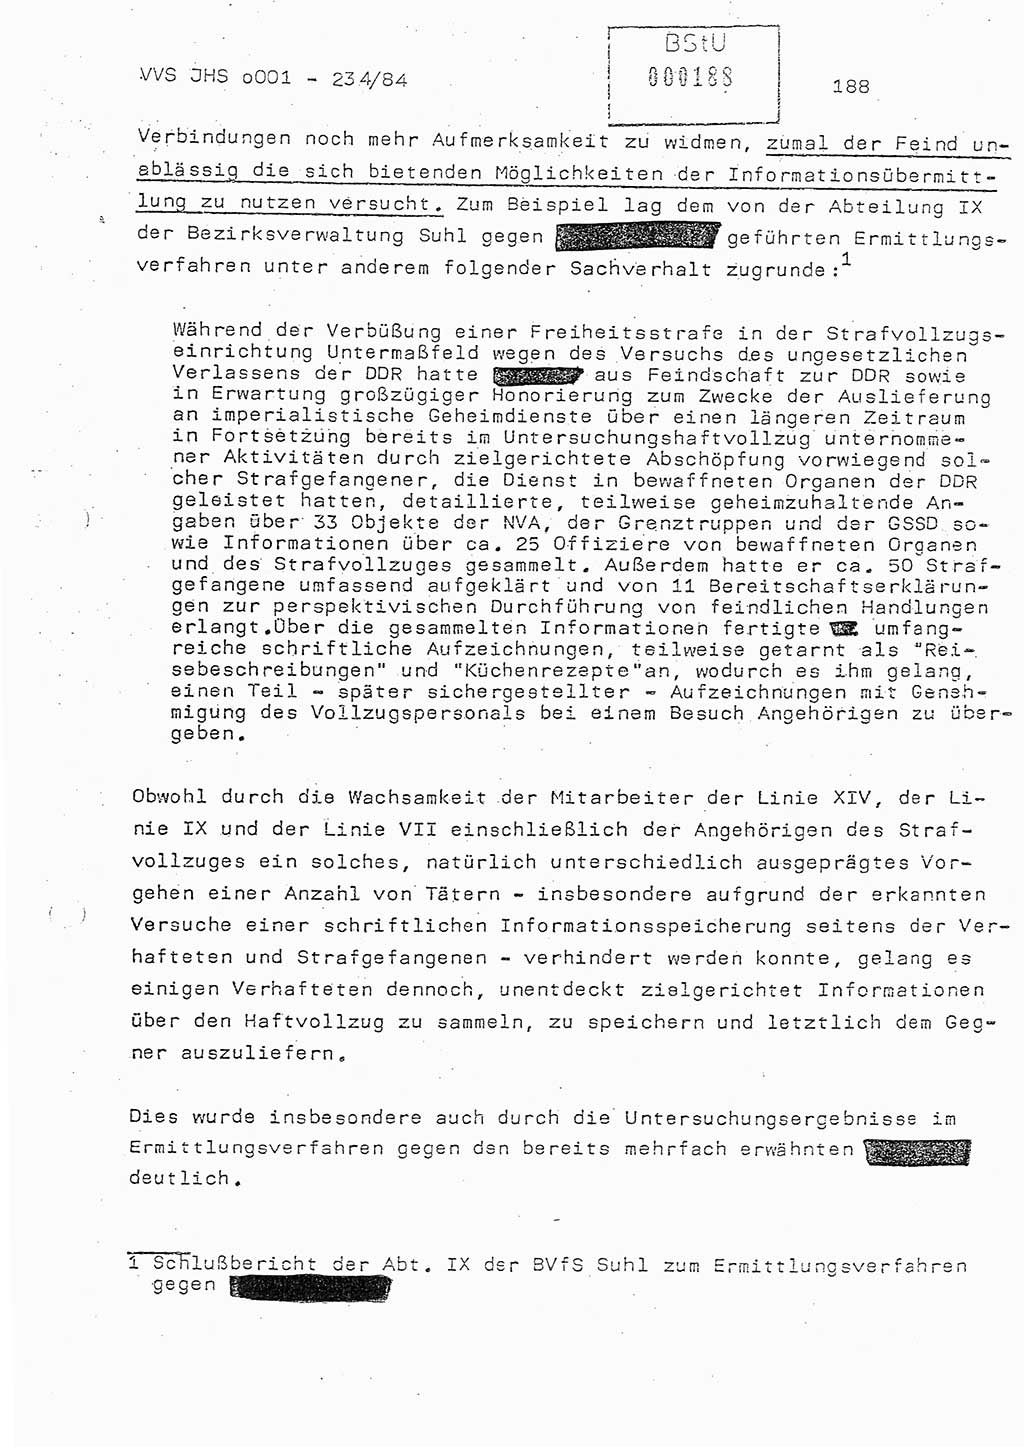 Dissertation Oberst Siegfried Rataizick (Abt. ⅩⅣ), Oberstleutnant Volkmar Heinz (Abt. ⅩⅣ), Oberstleutnant Werner Stein (HA Ⅸ), Hauptmann Heinz Conrad (JHS), Ministerium für Staatssicherheit (MfS) [Deutsche Demokratische Republik (DDR)], Juristische Hochschule (JHS), Vertrauliche Verschlußsache (VVS) o001-234/84, Potsdam 1984, Seite 188 (Diss. MfS DDR JHS VVS o001-234/84 1984, S. 188)